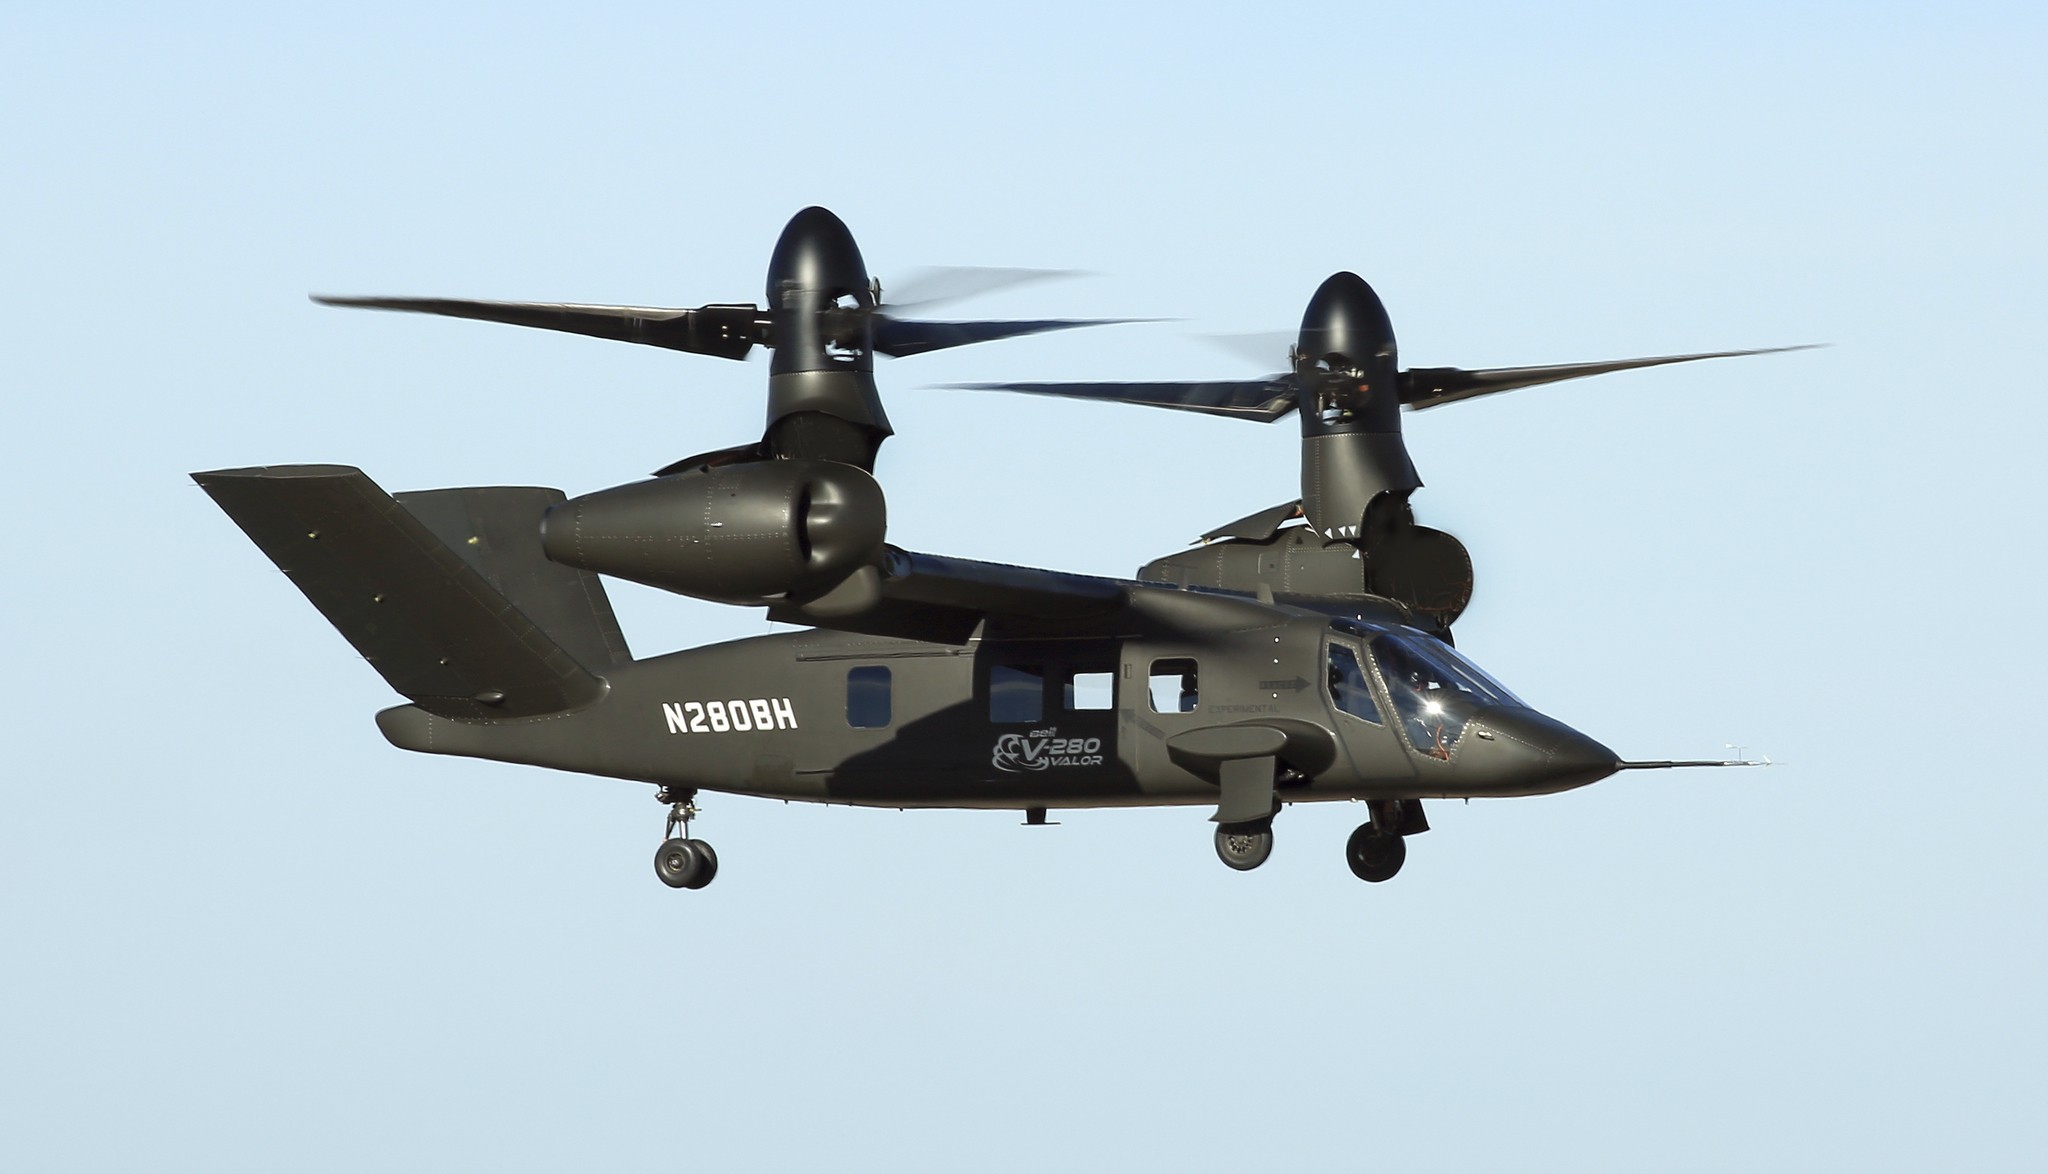 3.200 helicópteros Black Hawk y Apache serán sustituidos por convertibles Bell V-280 Valor - Lockheed Martin y Boeing pierden un contrato potencial de 70.000 millones de dólares